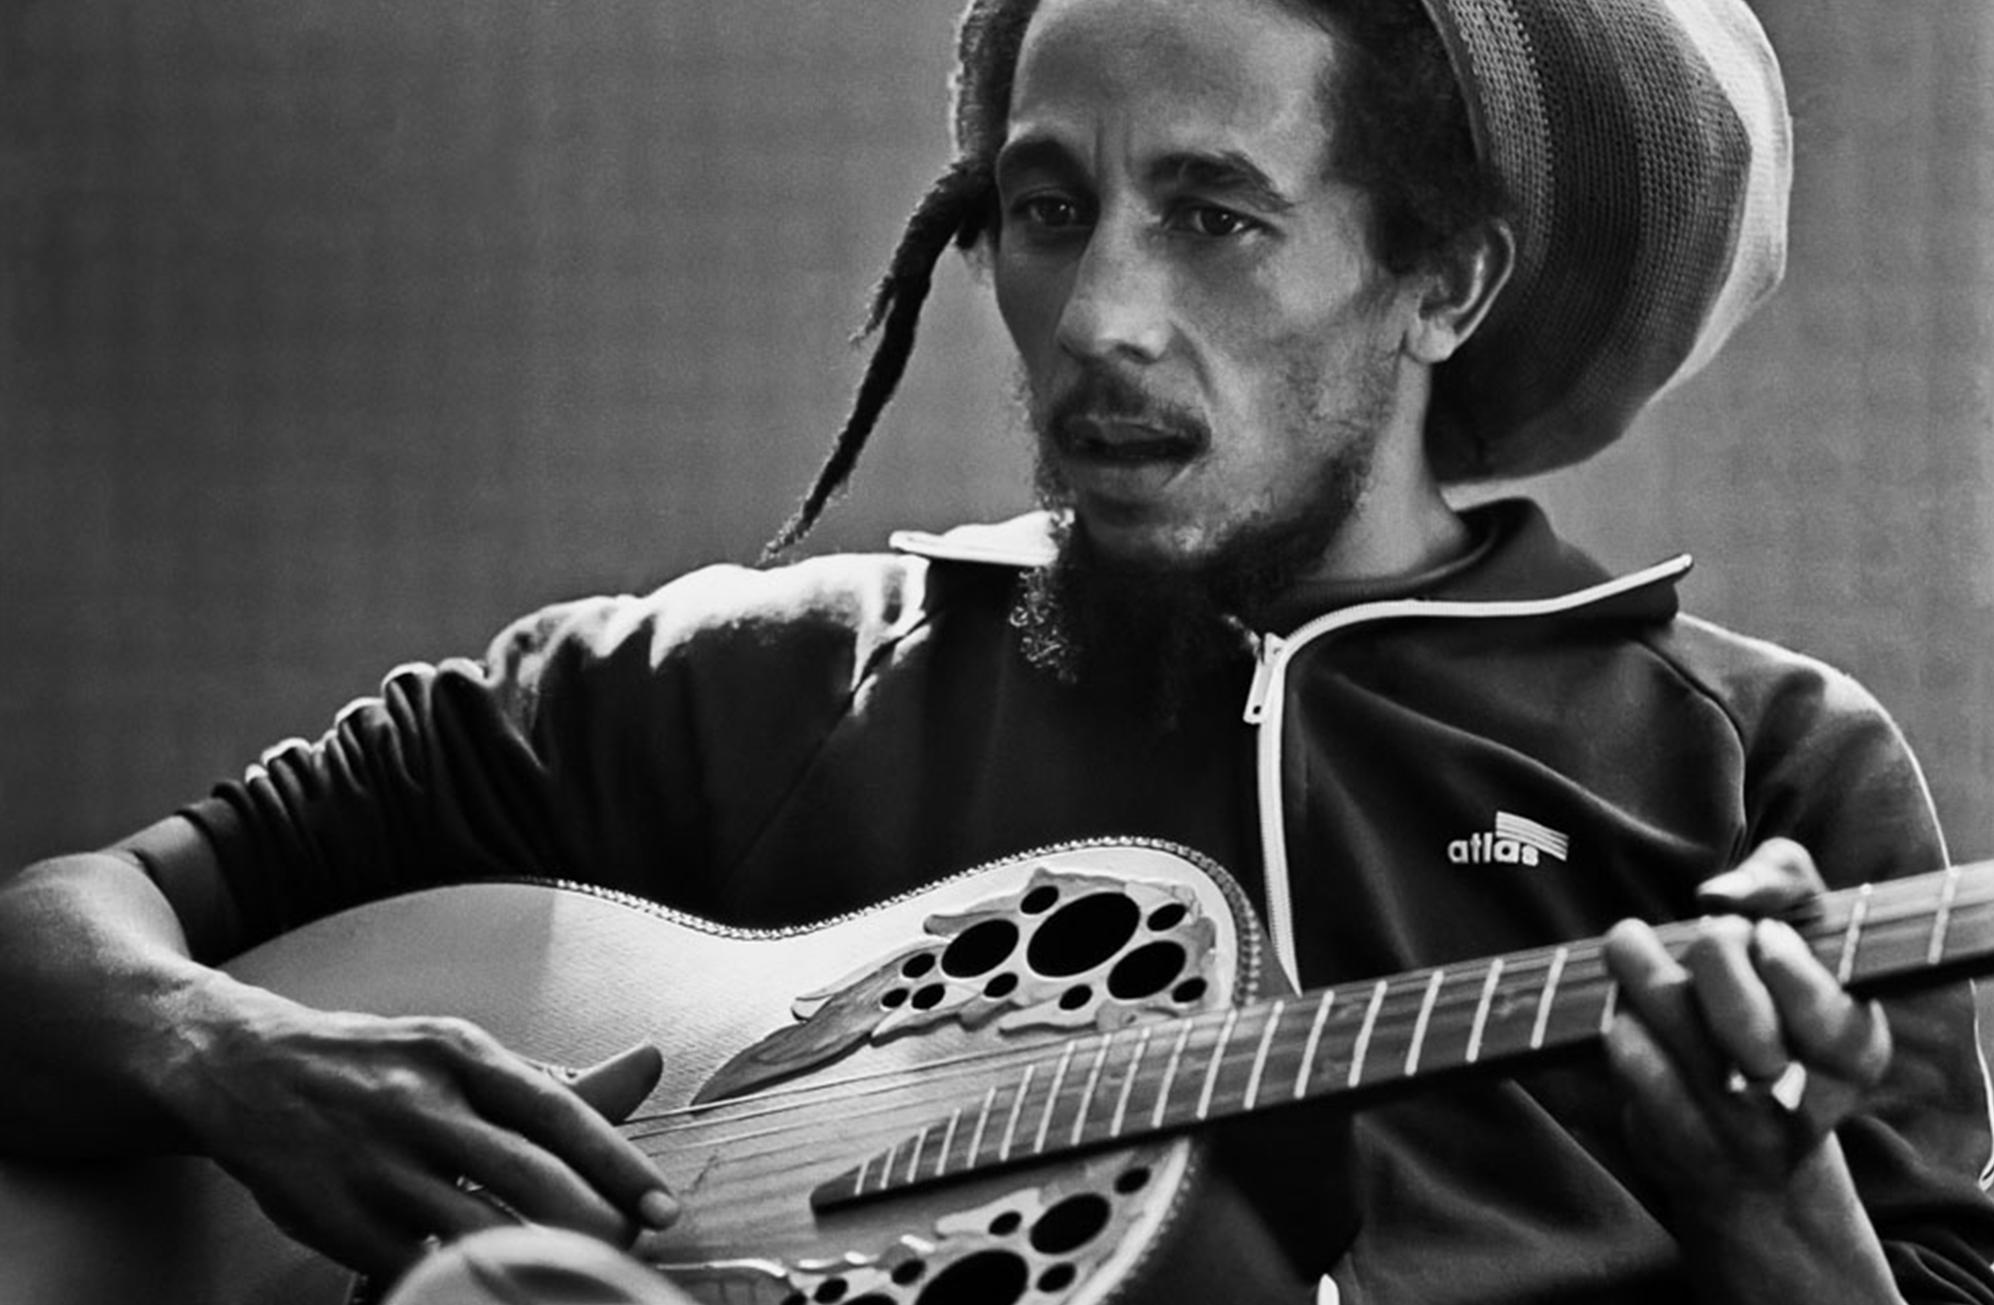 Signierter 16x20""-Druck von Bob Marley in limitierter Auflage von Lynn Goldsmith, aufgenommen 1980.

Limitierte Auflage Nummer 6/20

Moderner C-Typ-Druck. Sofort versandbereit.

Lynn Goldsmith hat über fünf Jahrzehnte amerikanischer Kultur